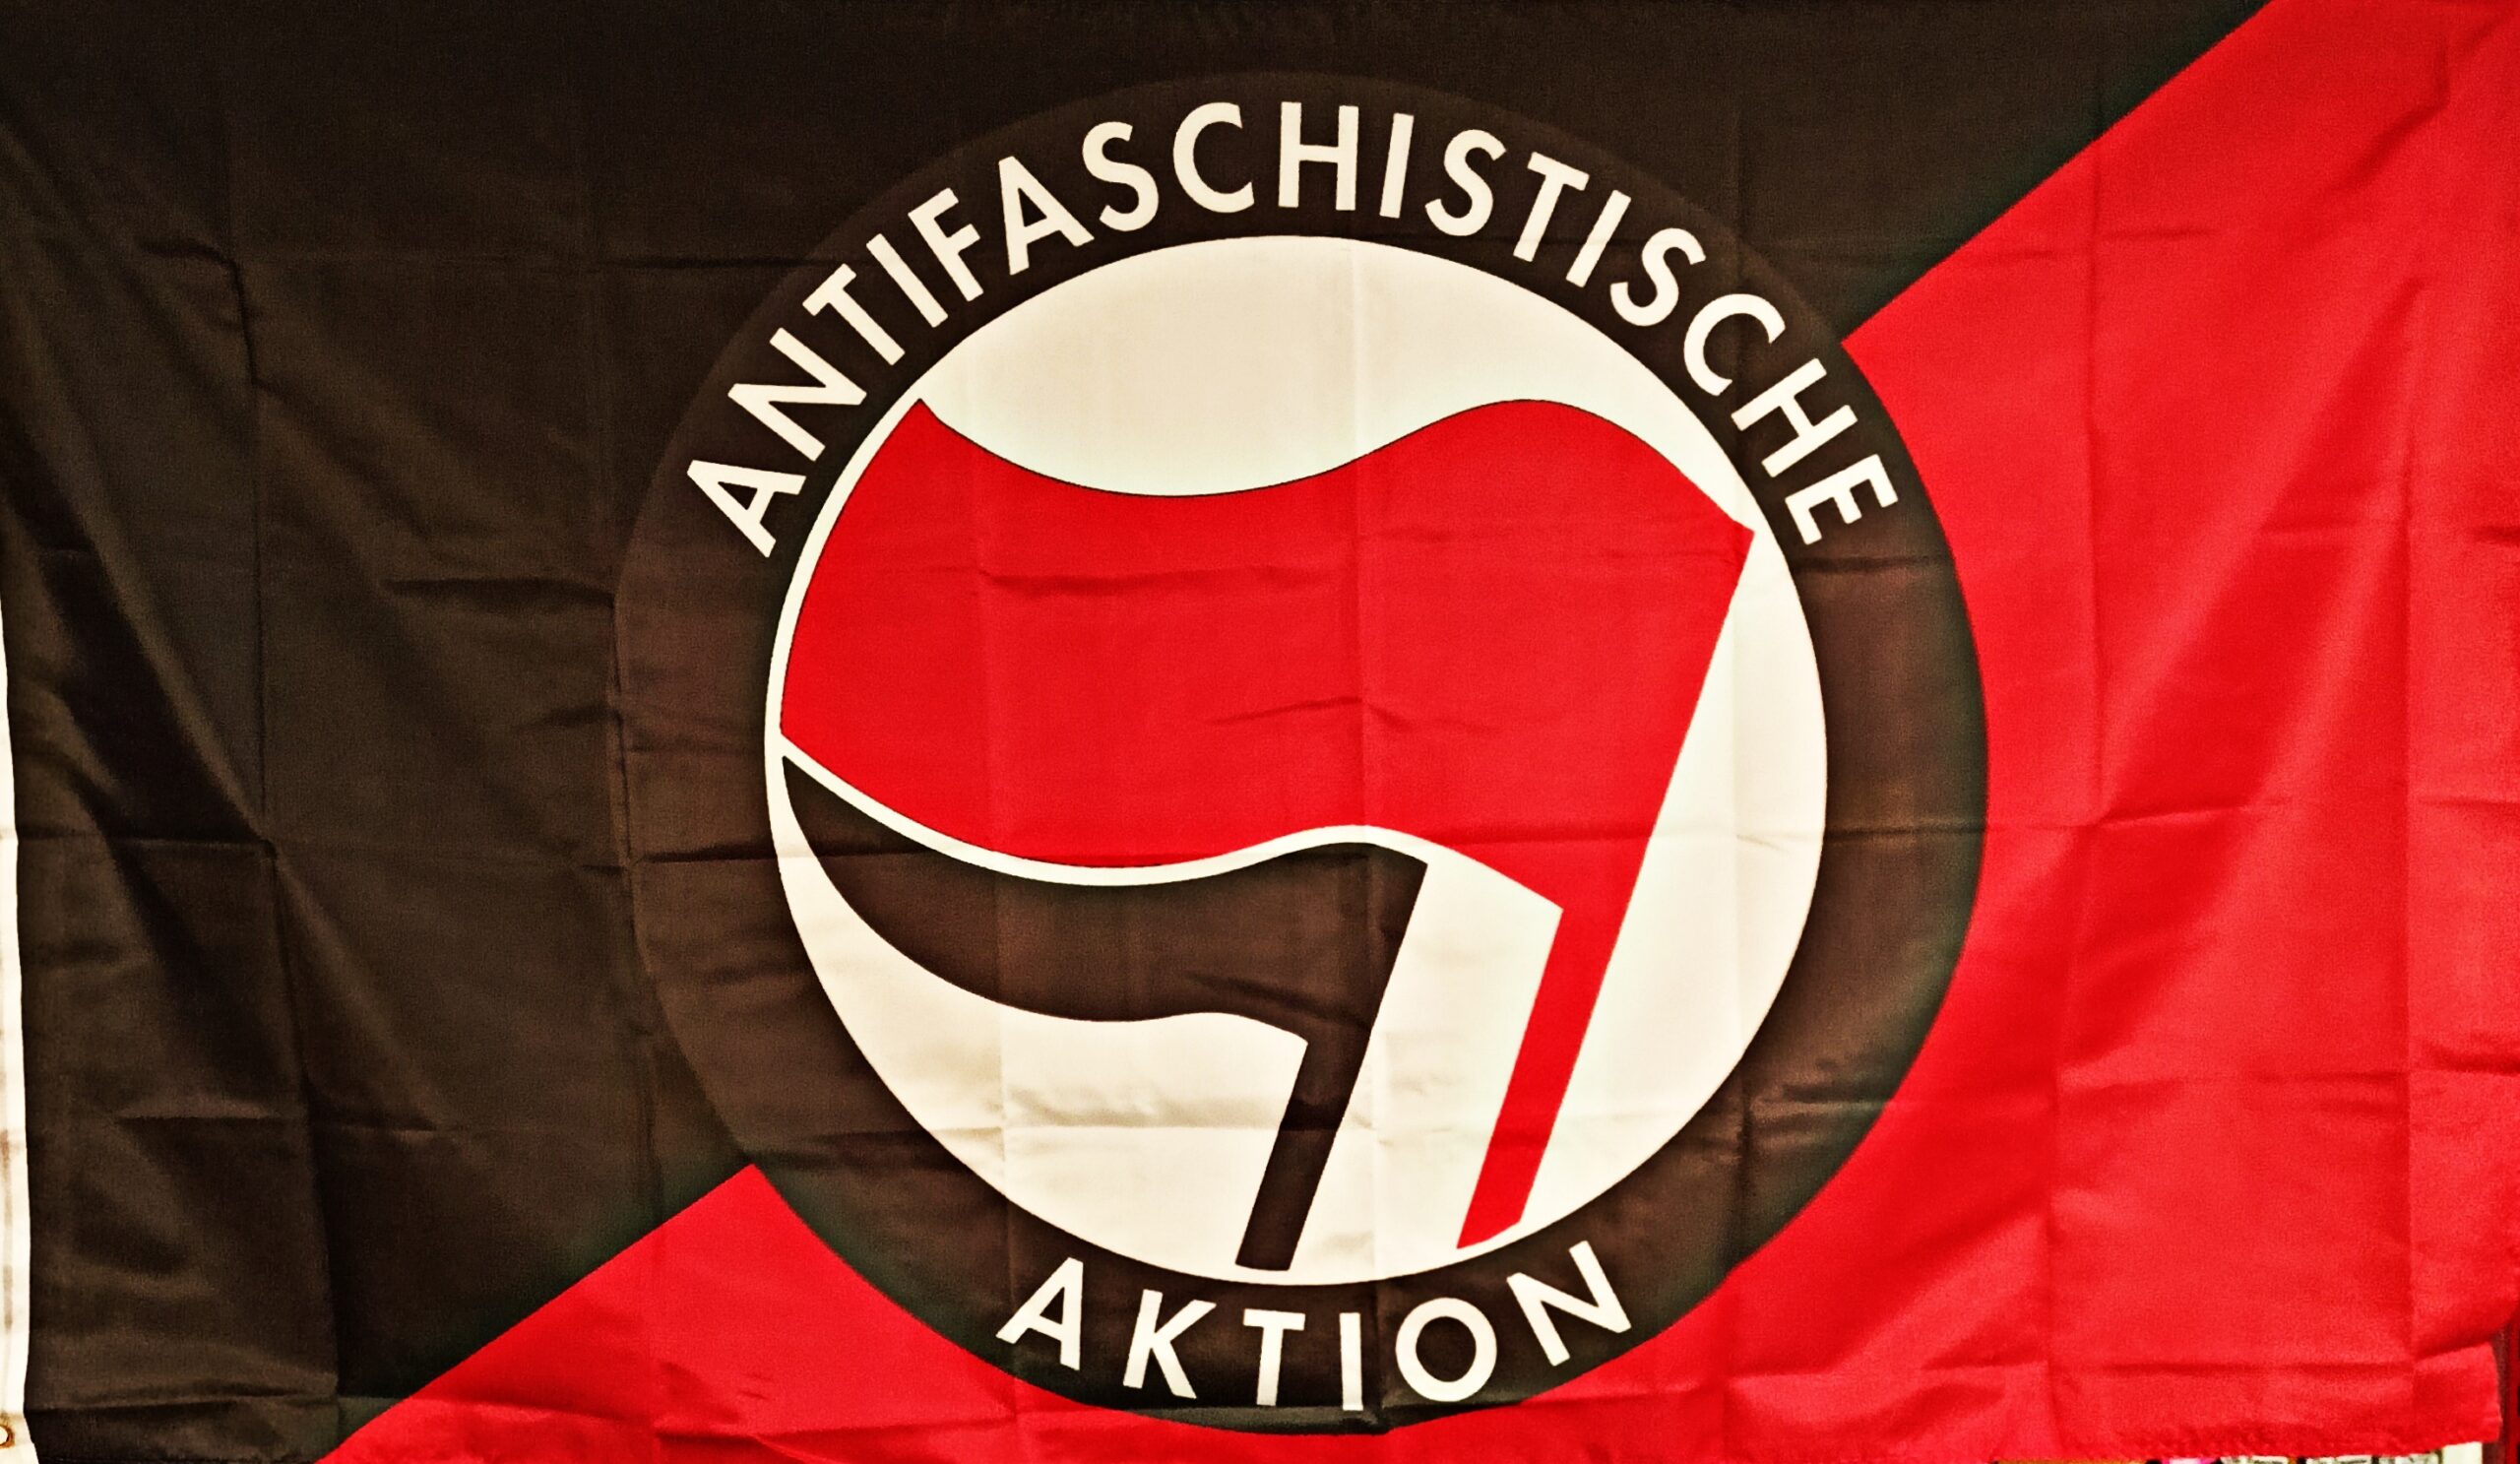 antifaschistischeaktiondeutschbesch